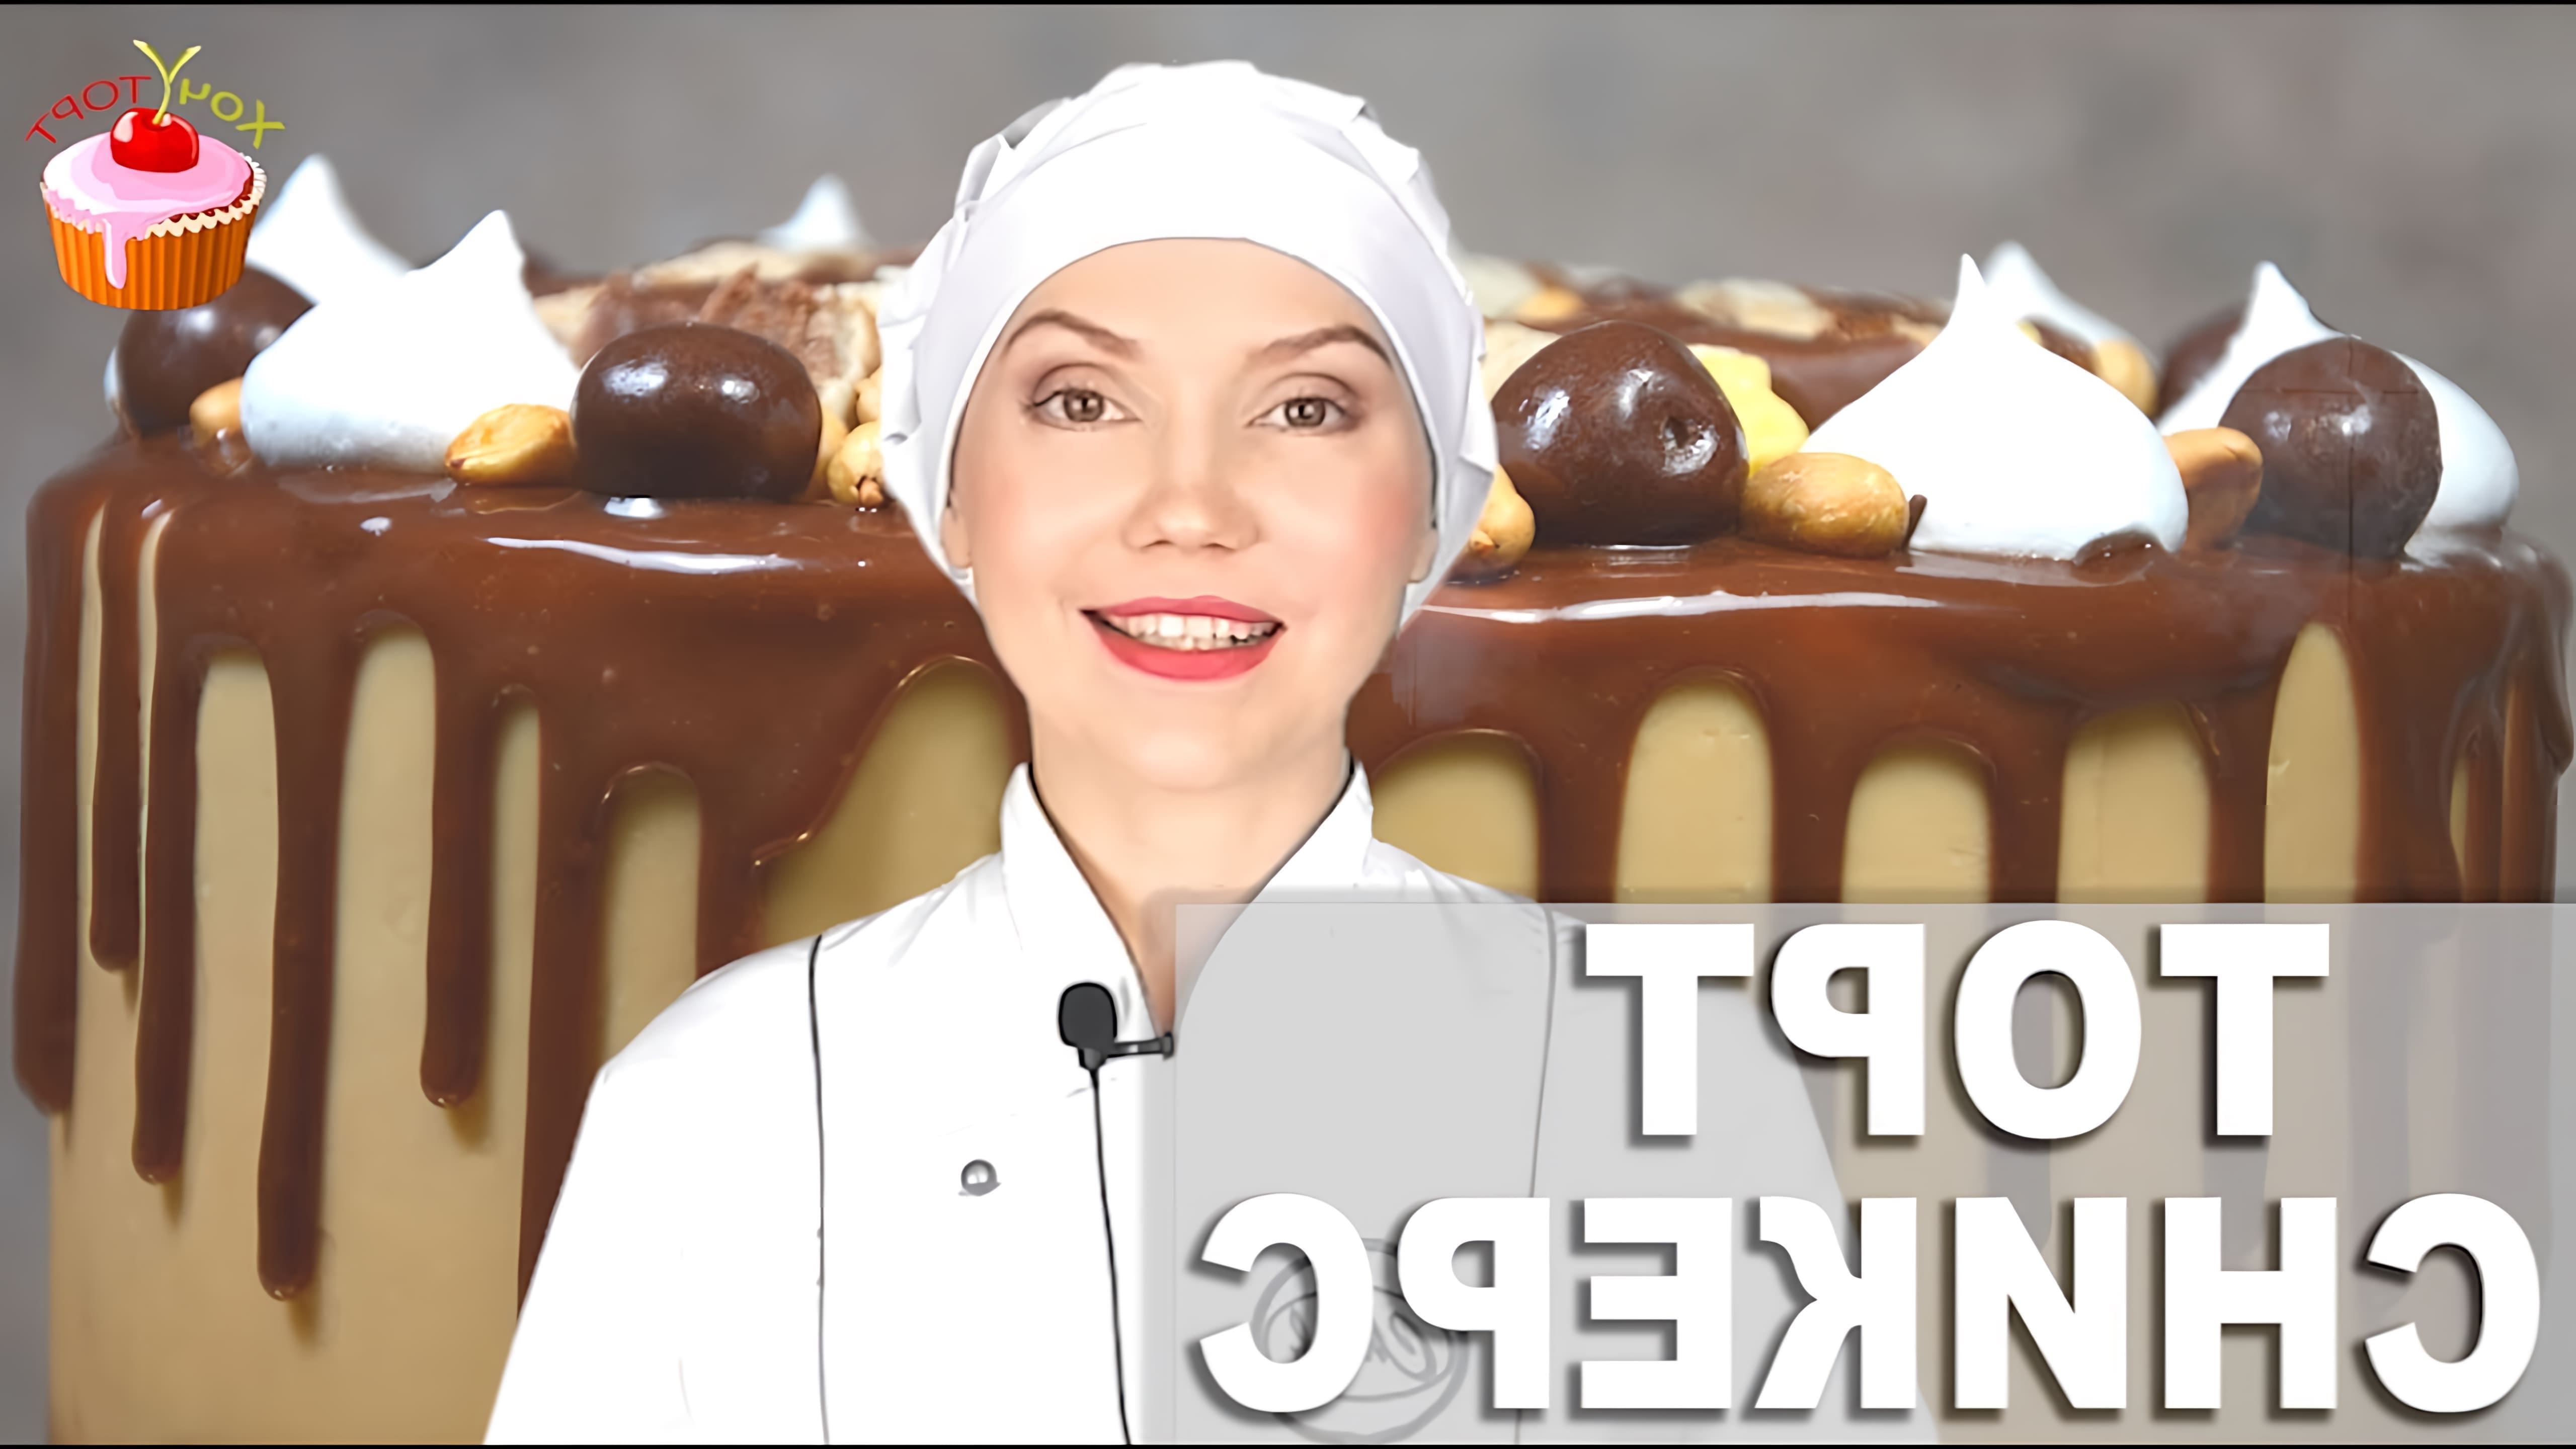 В этом видео демонстрируется рецепт приготовления торта "Сникерс" с безе